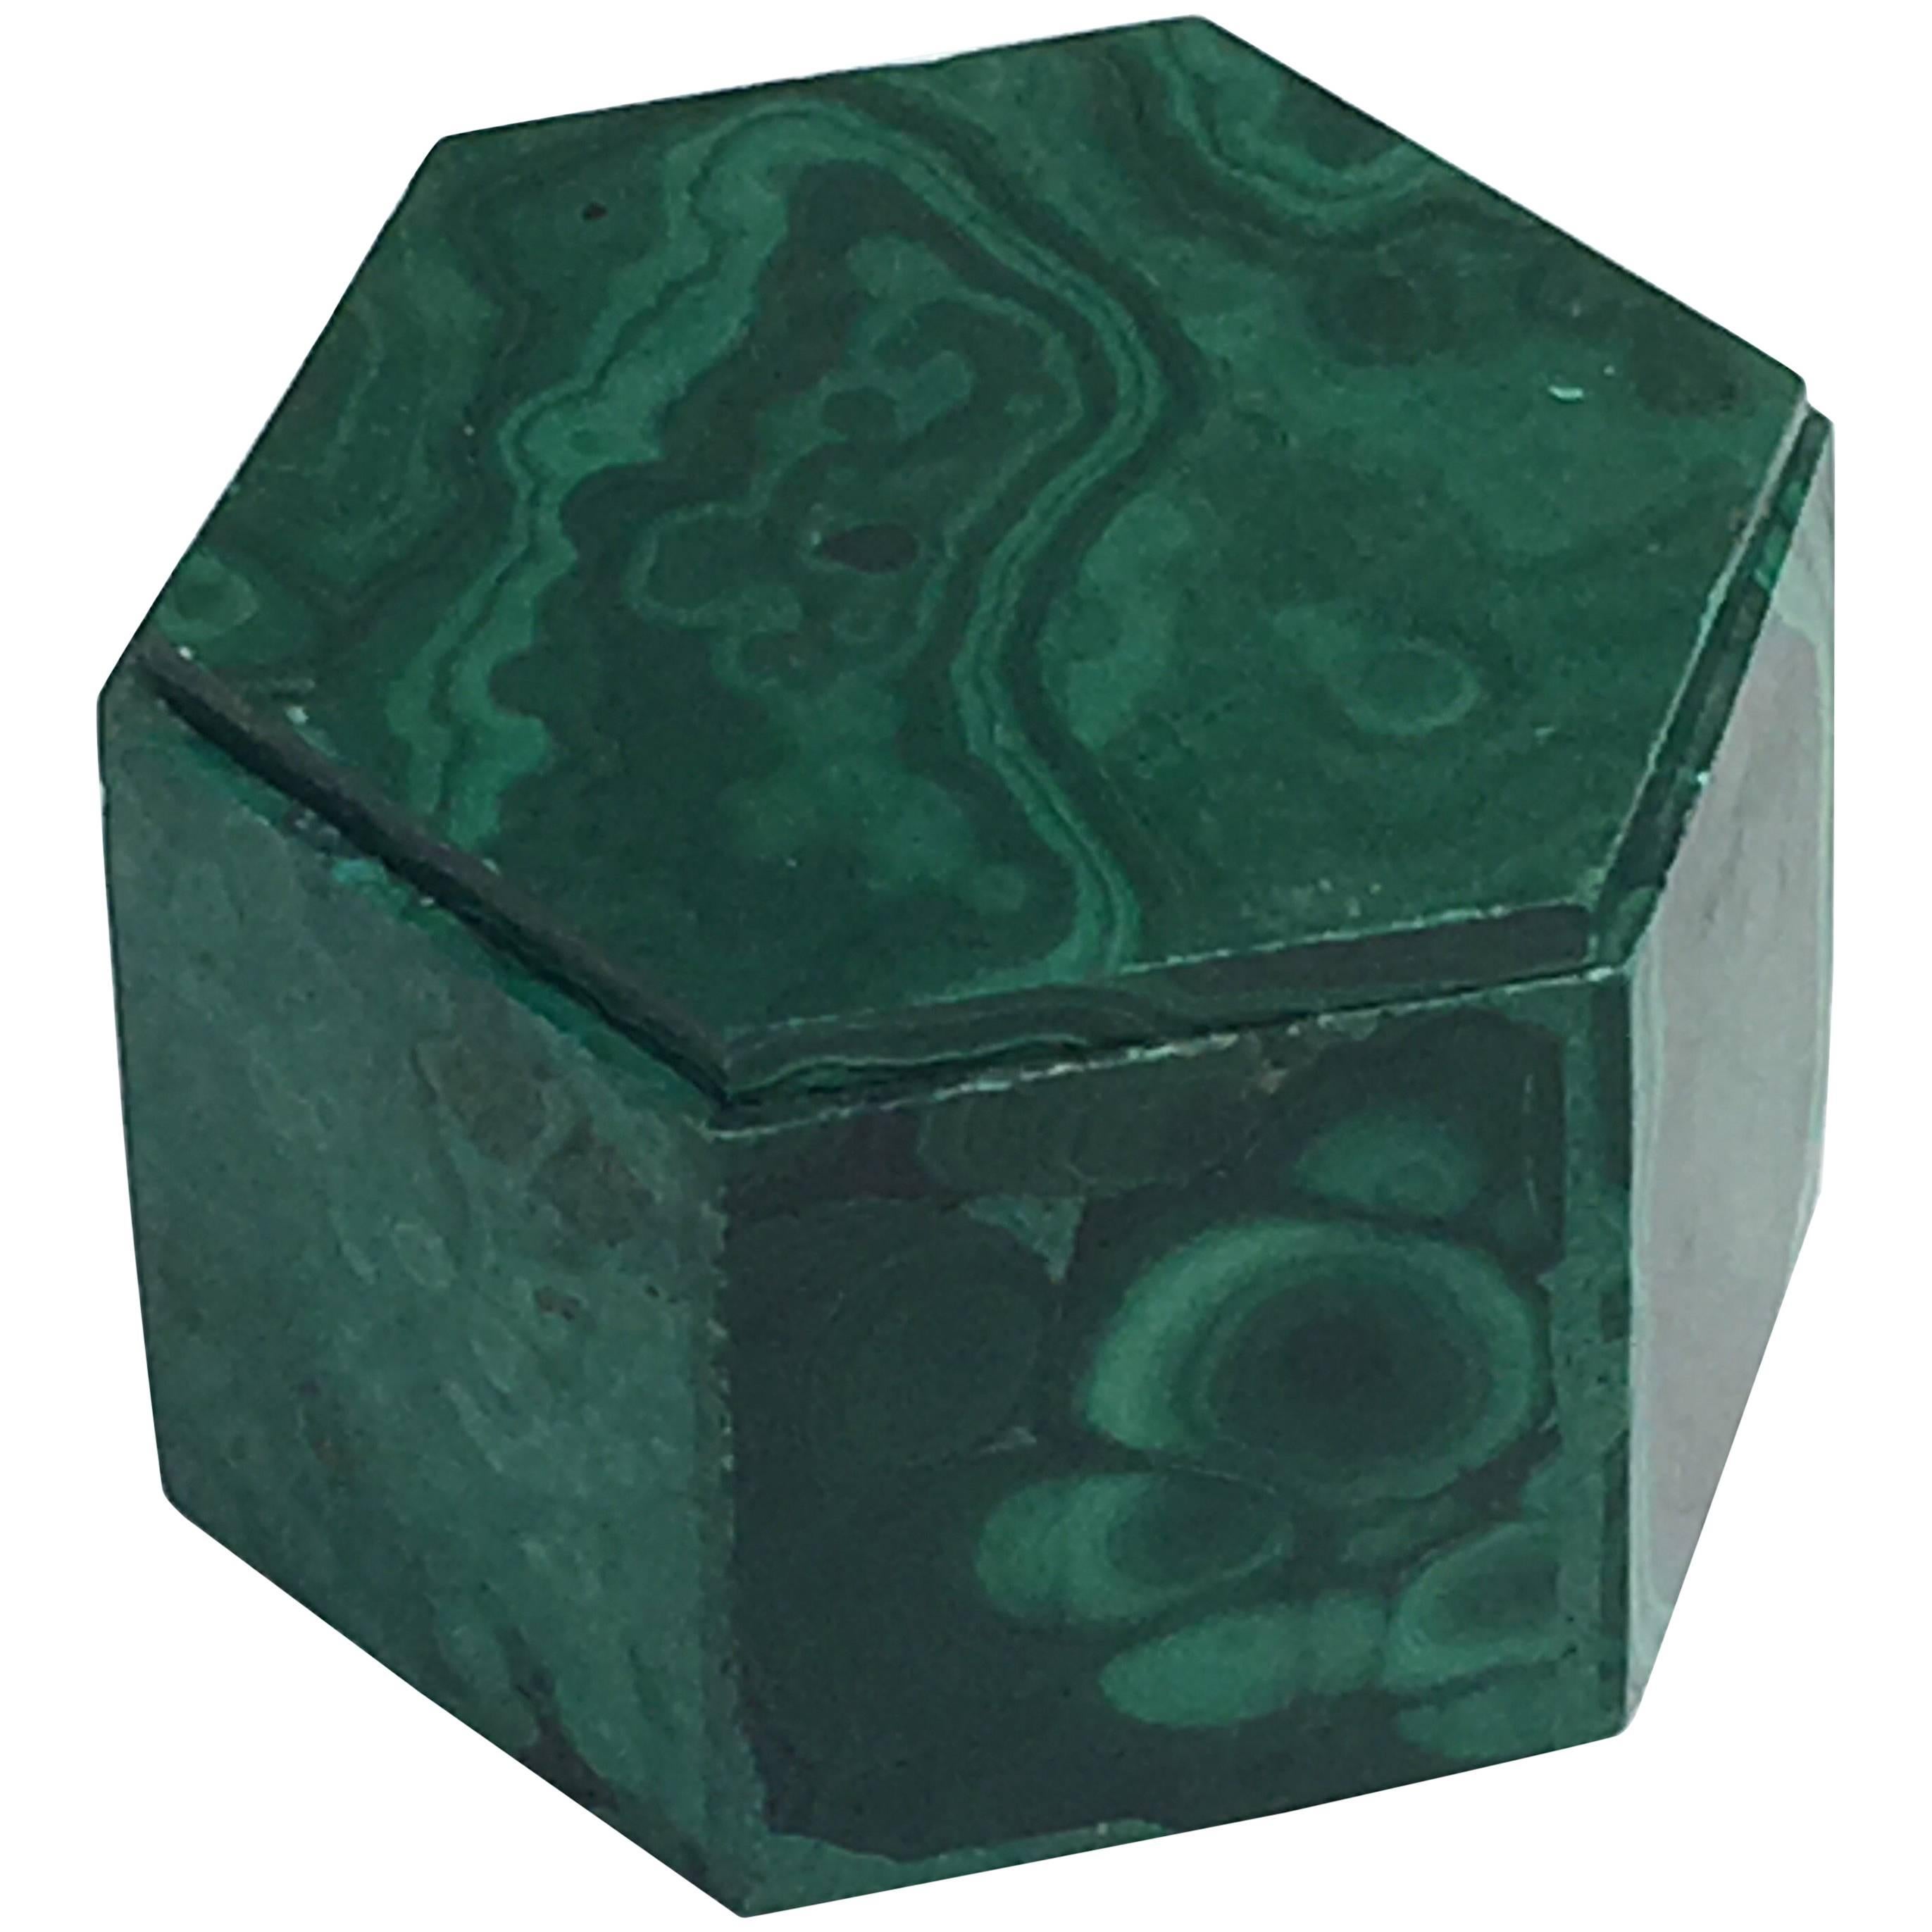 Decorative Box in Malachite